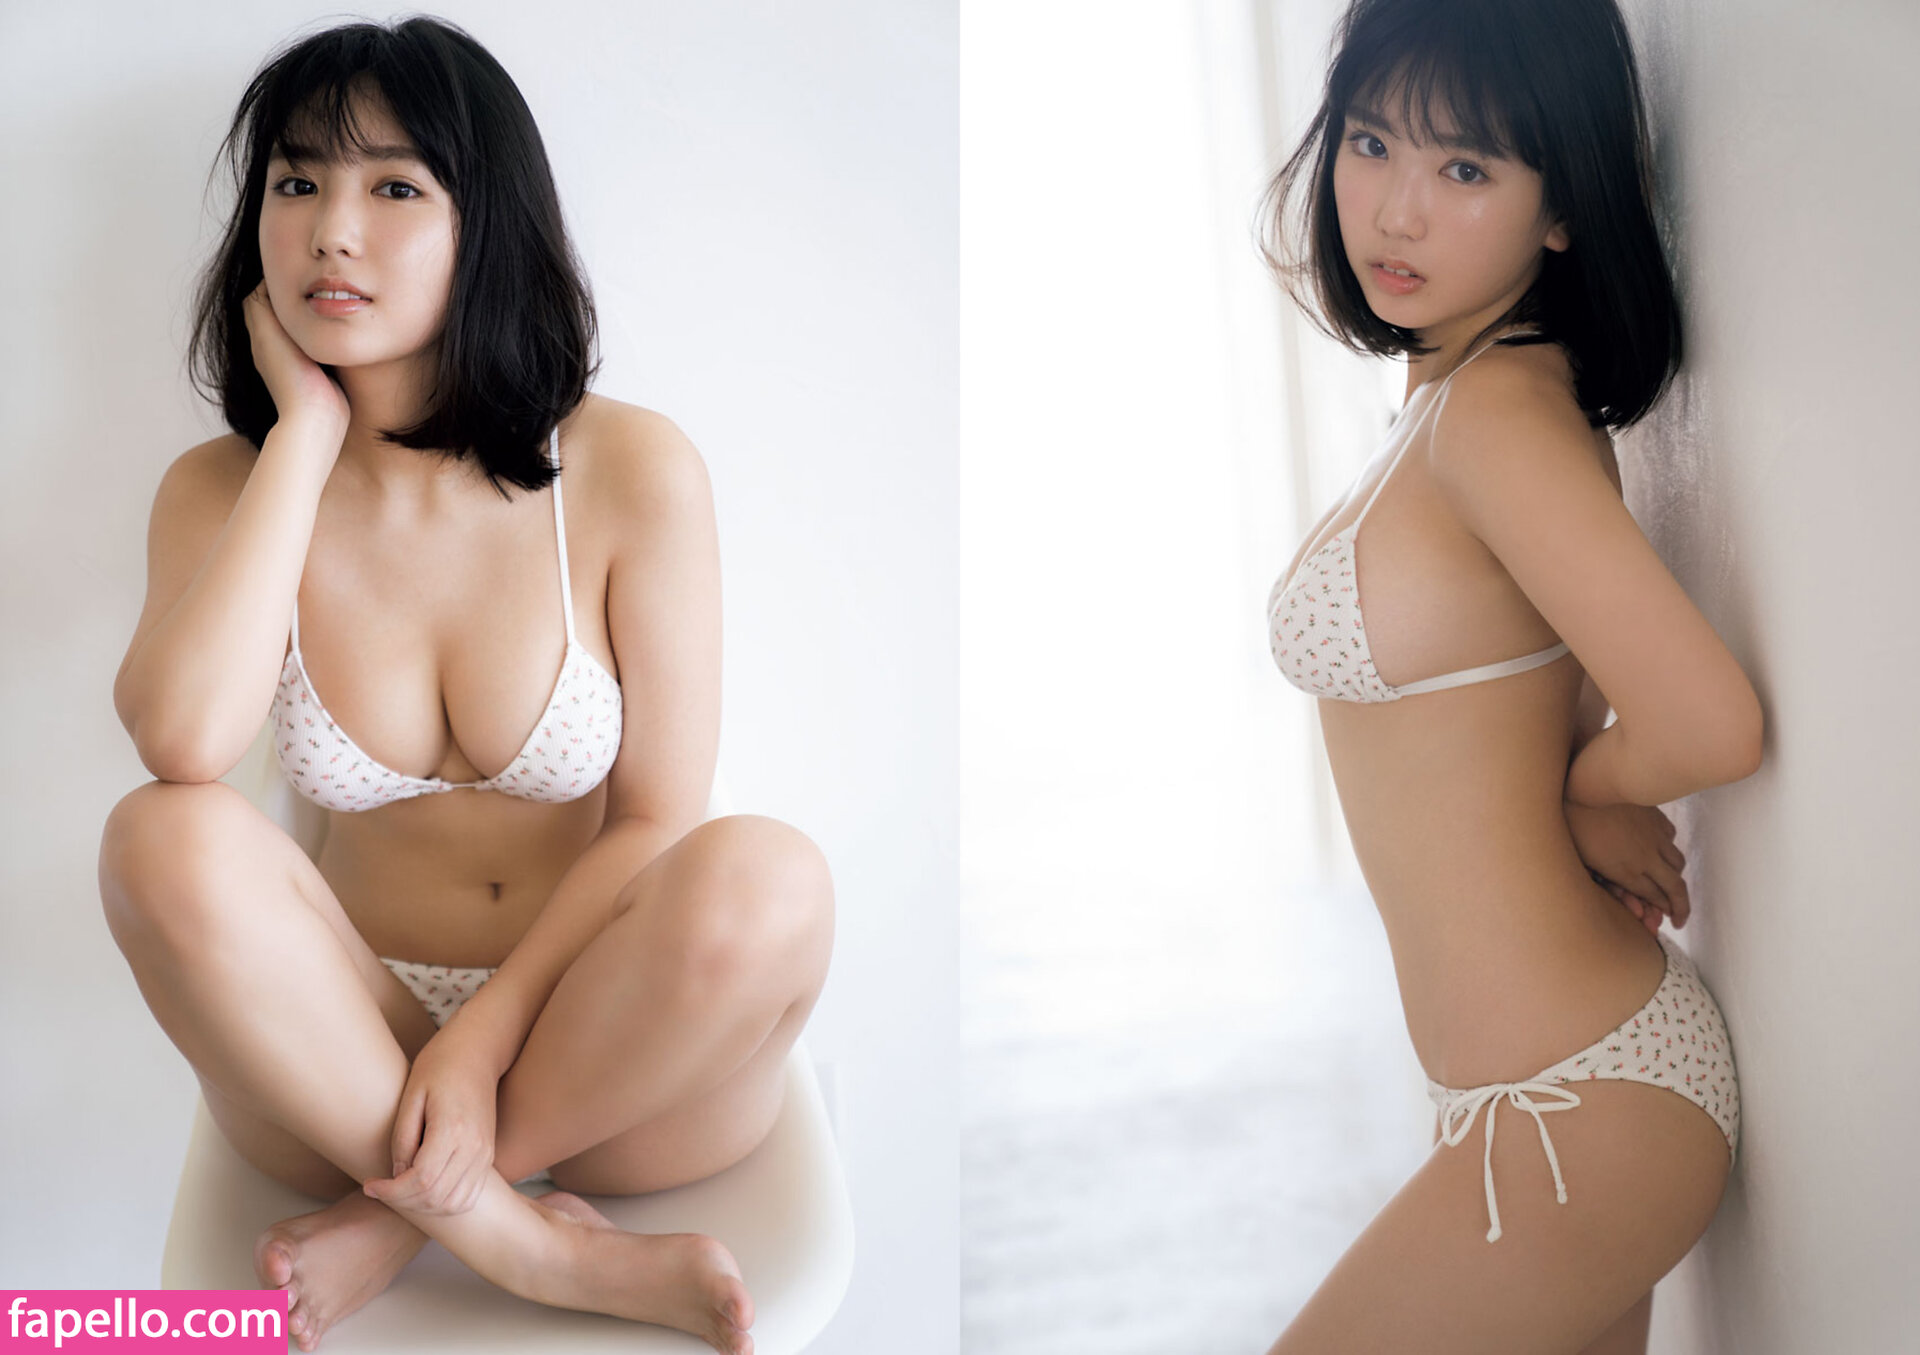 Aika sawaguchi nudes